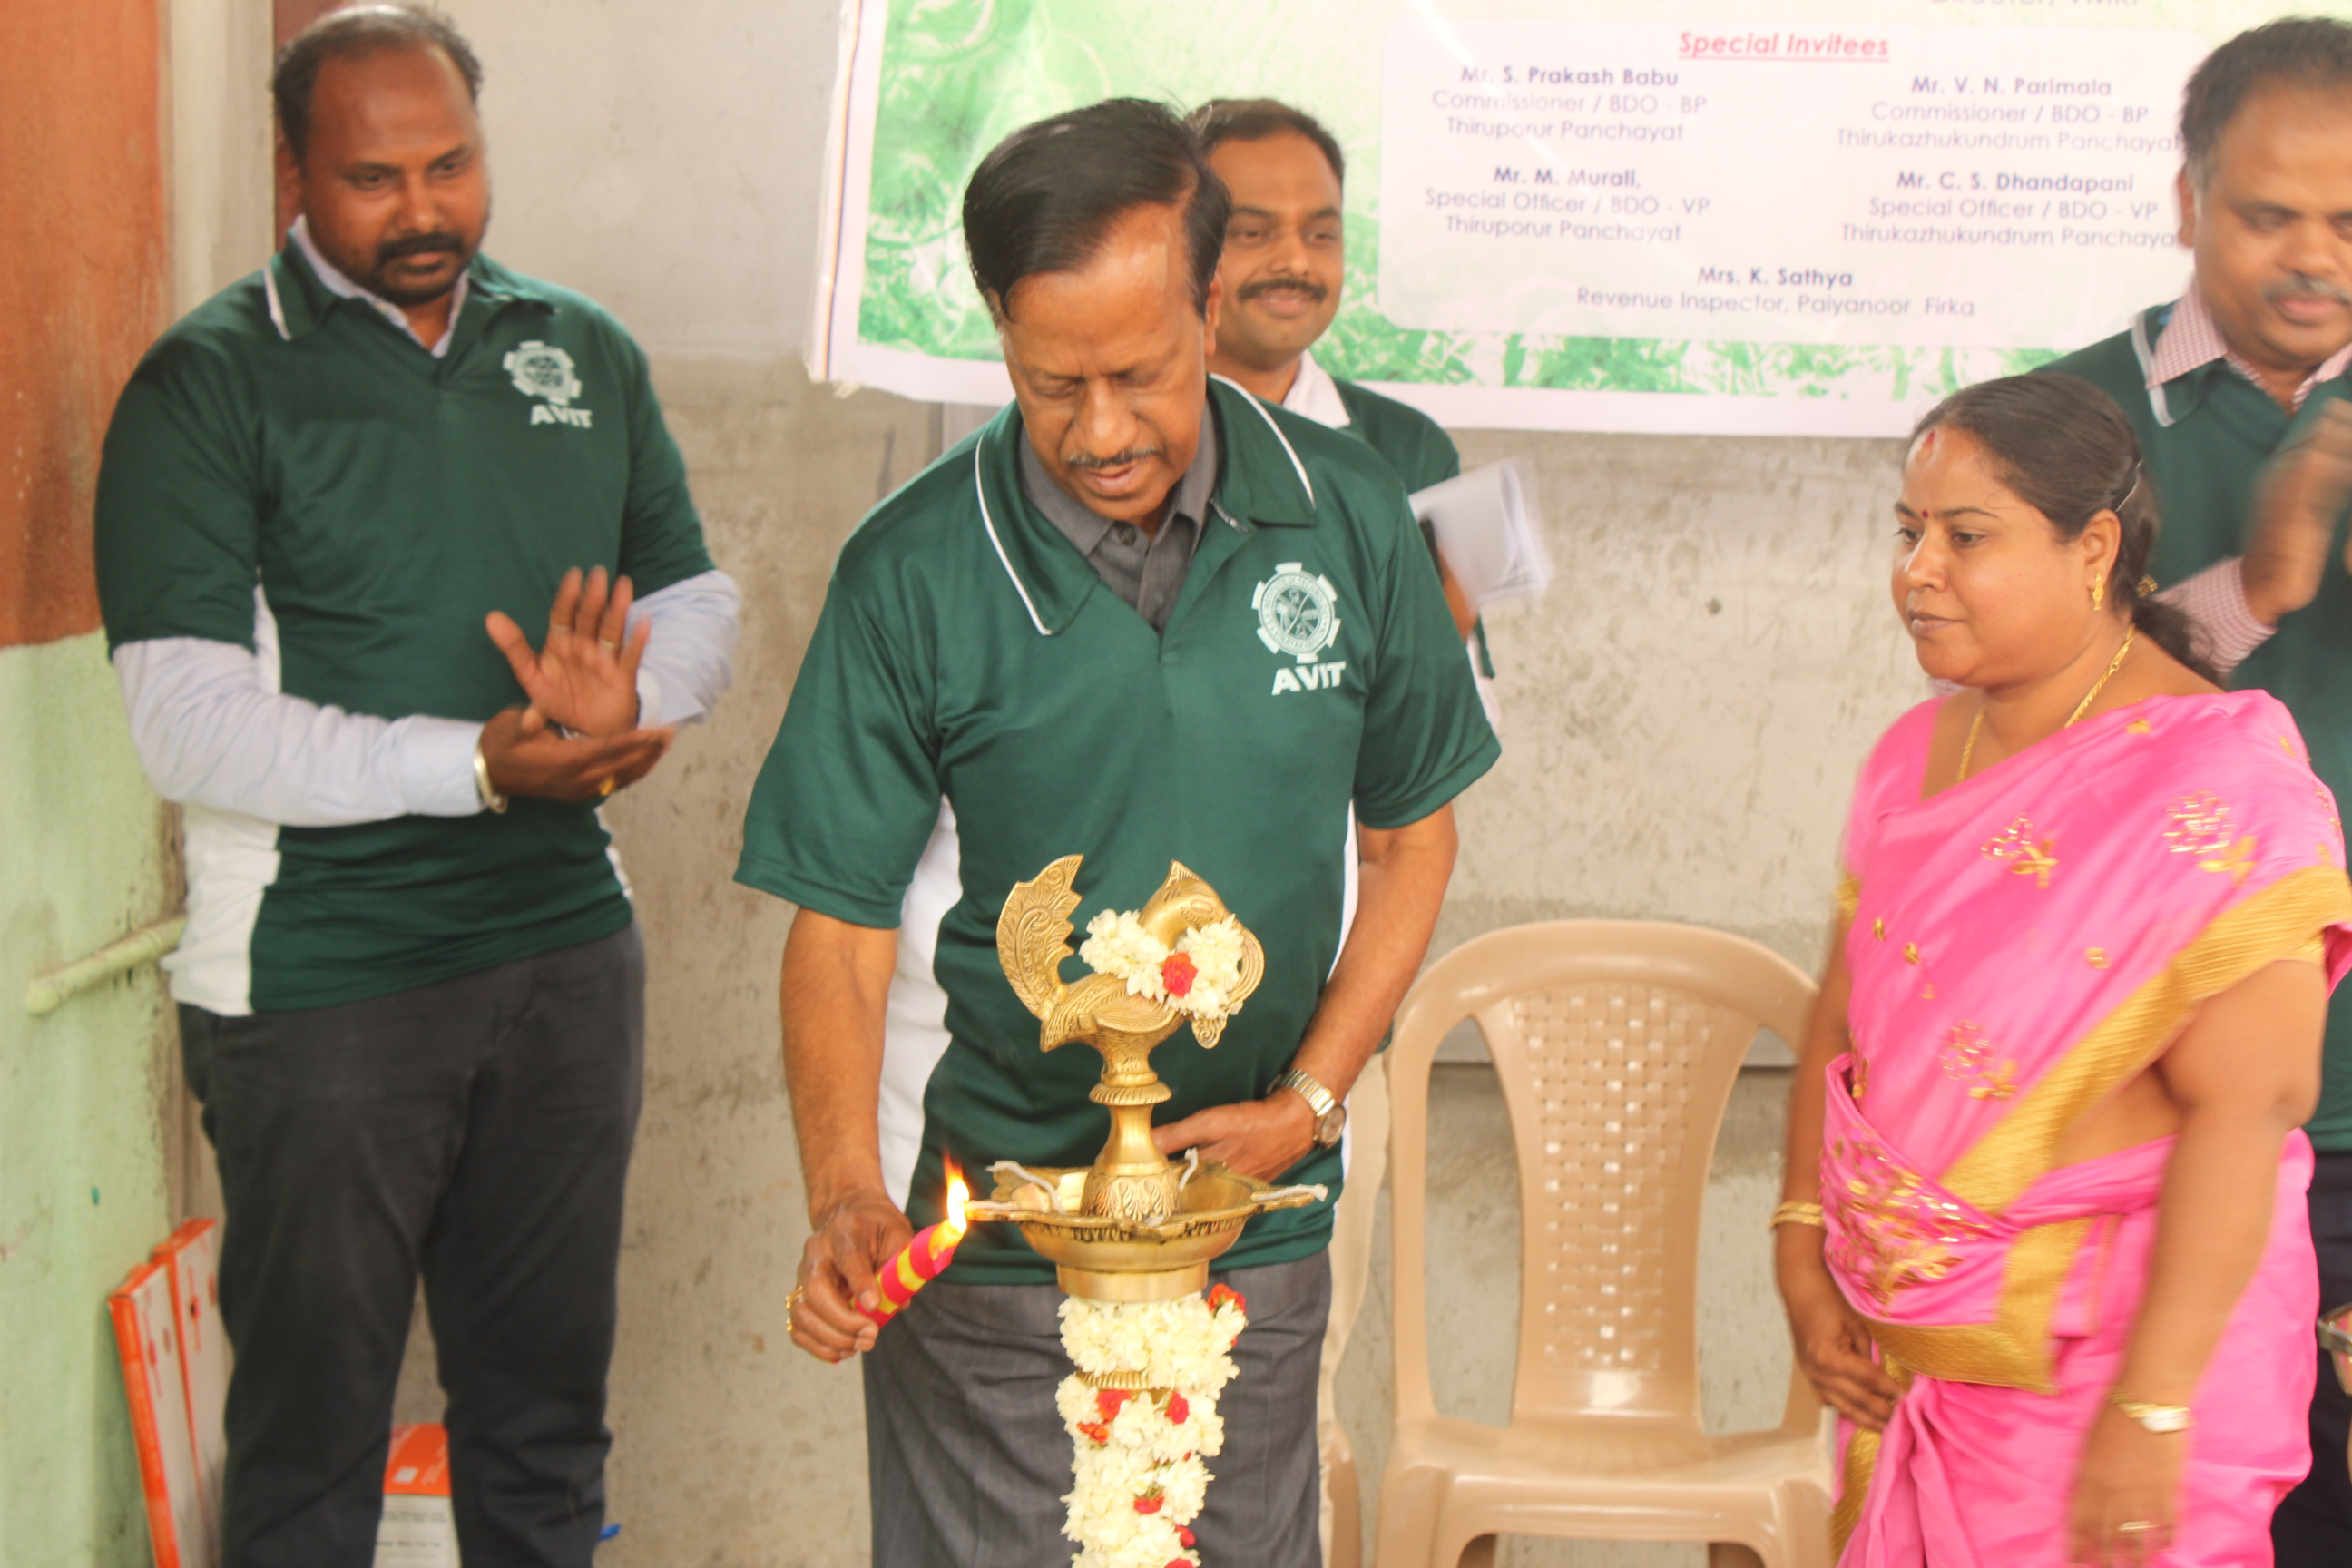 Dr.M. Ponnavaikko lighting lamp in the Unnat Bharat Abhiyan Programme
